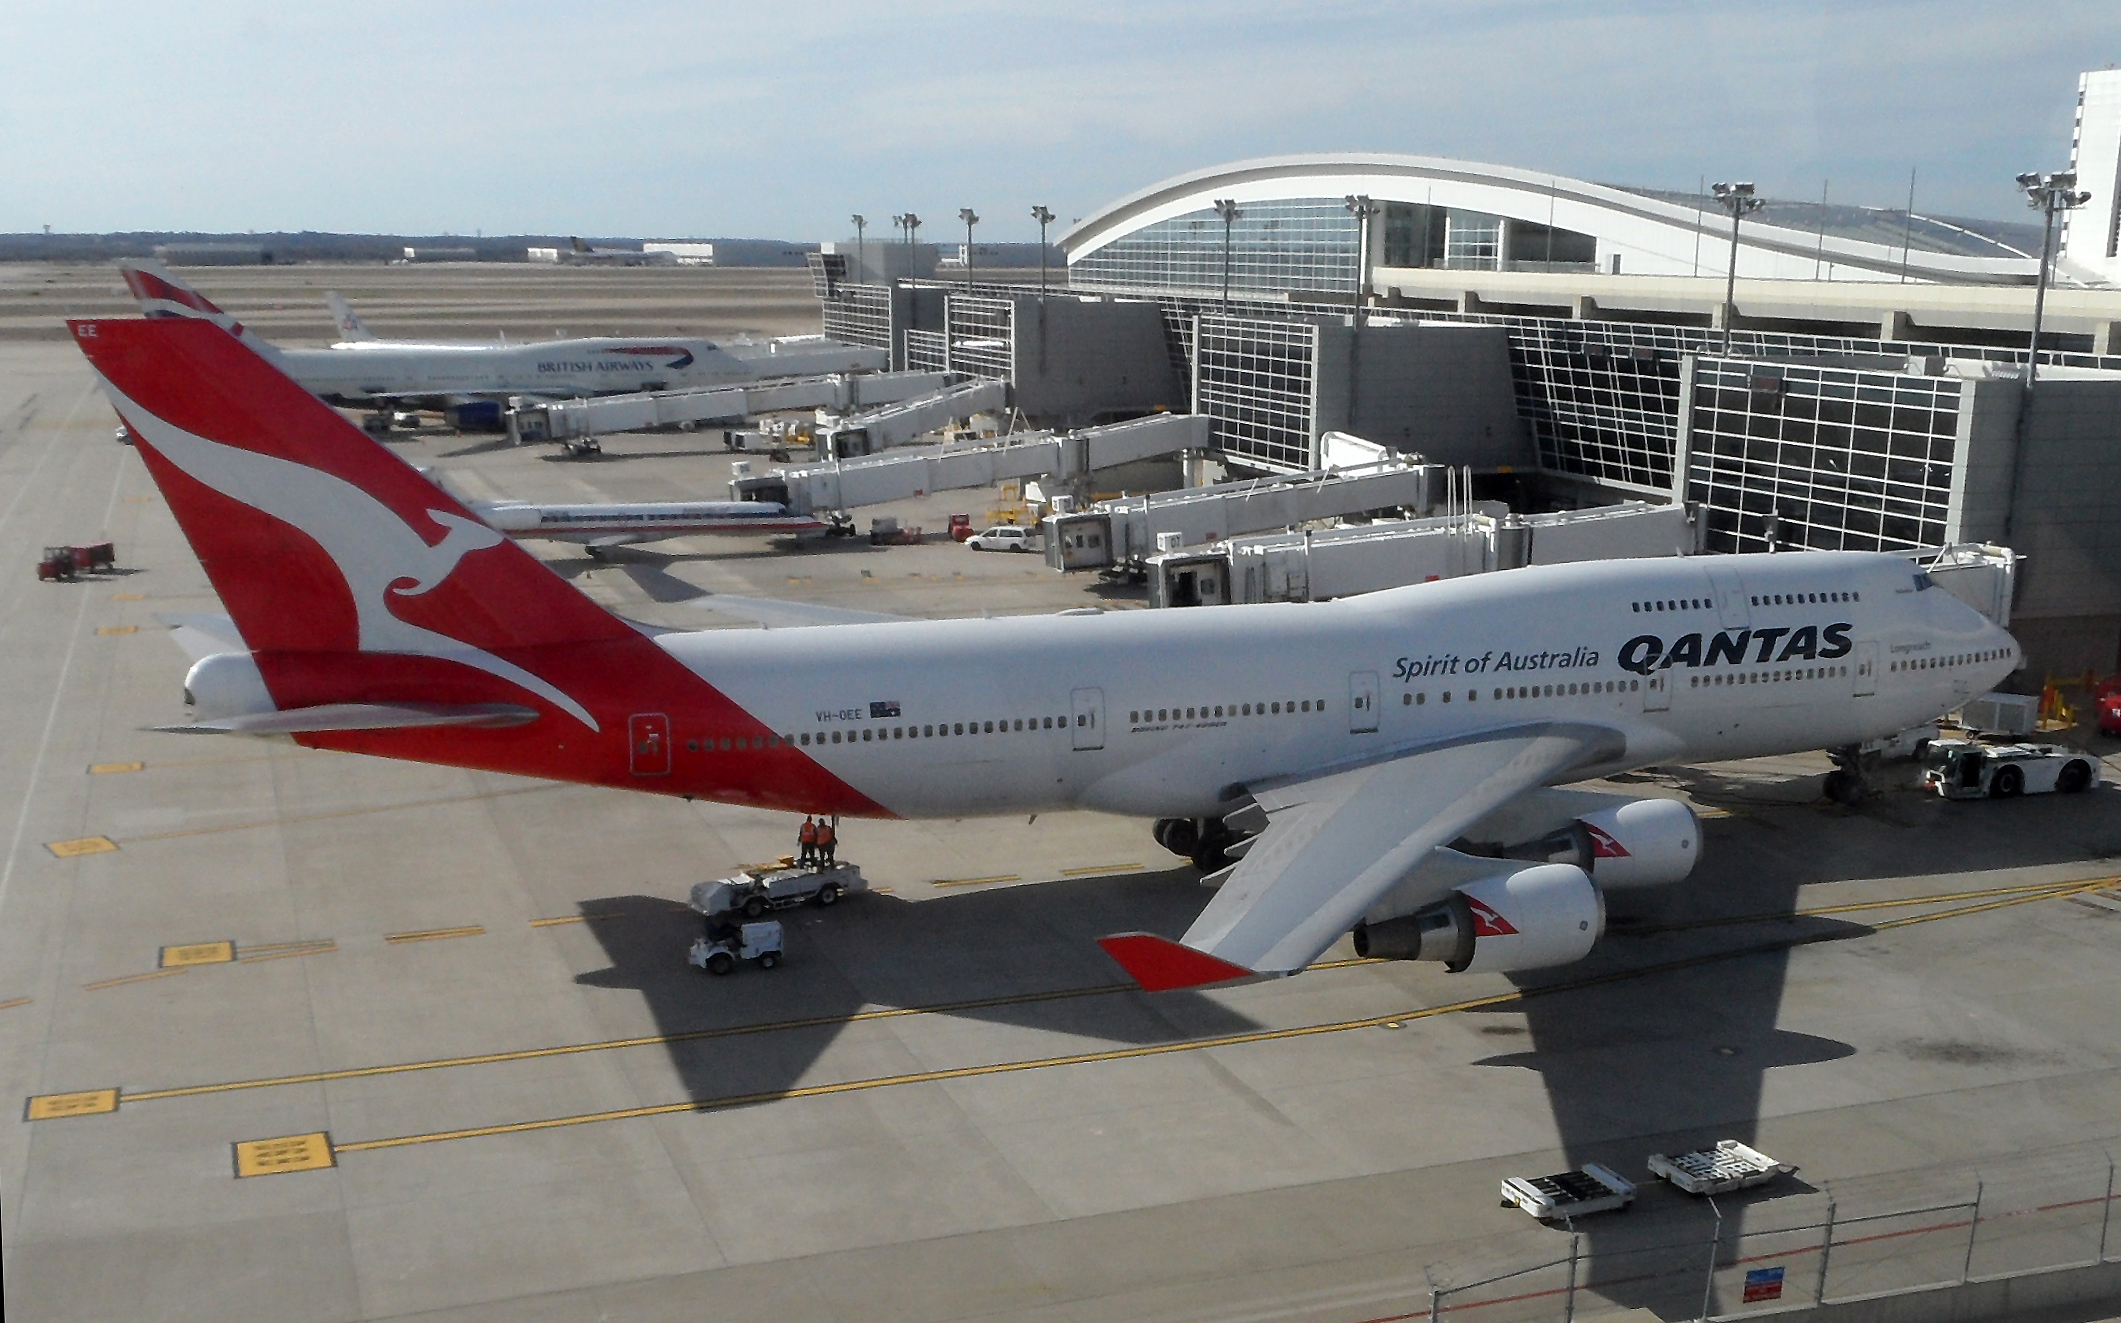 Qantas_VH-OEE_at_DFW.jpg